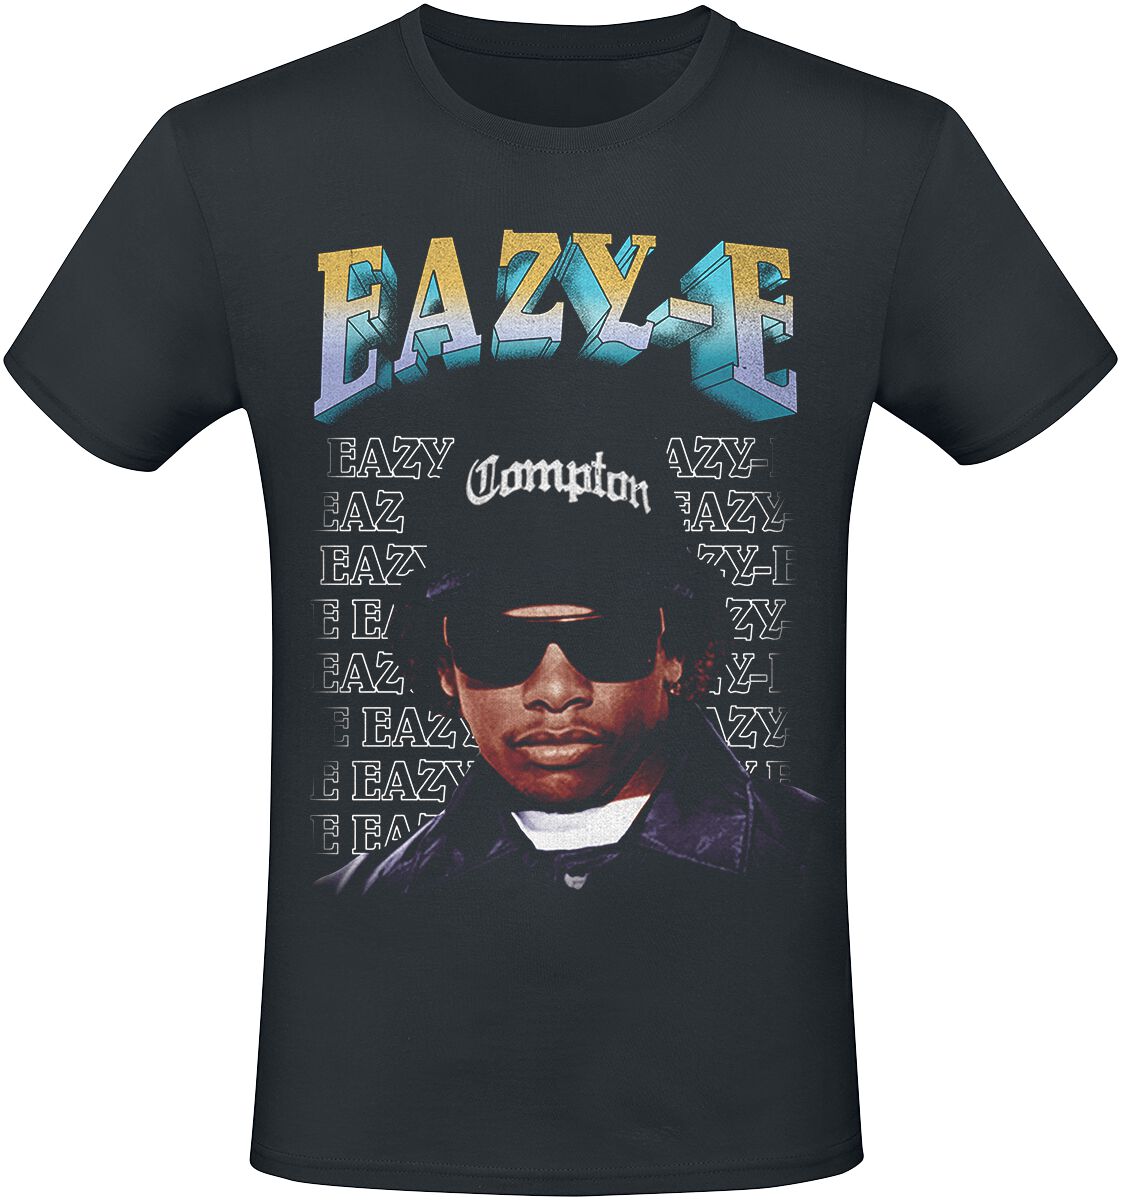 Eazy-E T-Shirt - Compton - S bis 3XL - für Männer - Größe XL - schwarz  - Lizenziertes Merchandise!